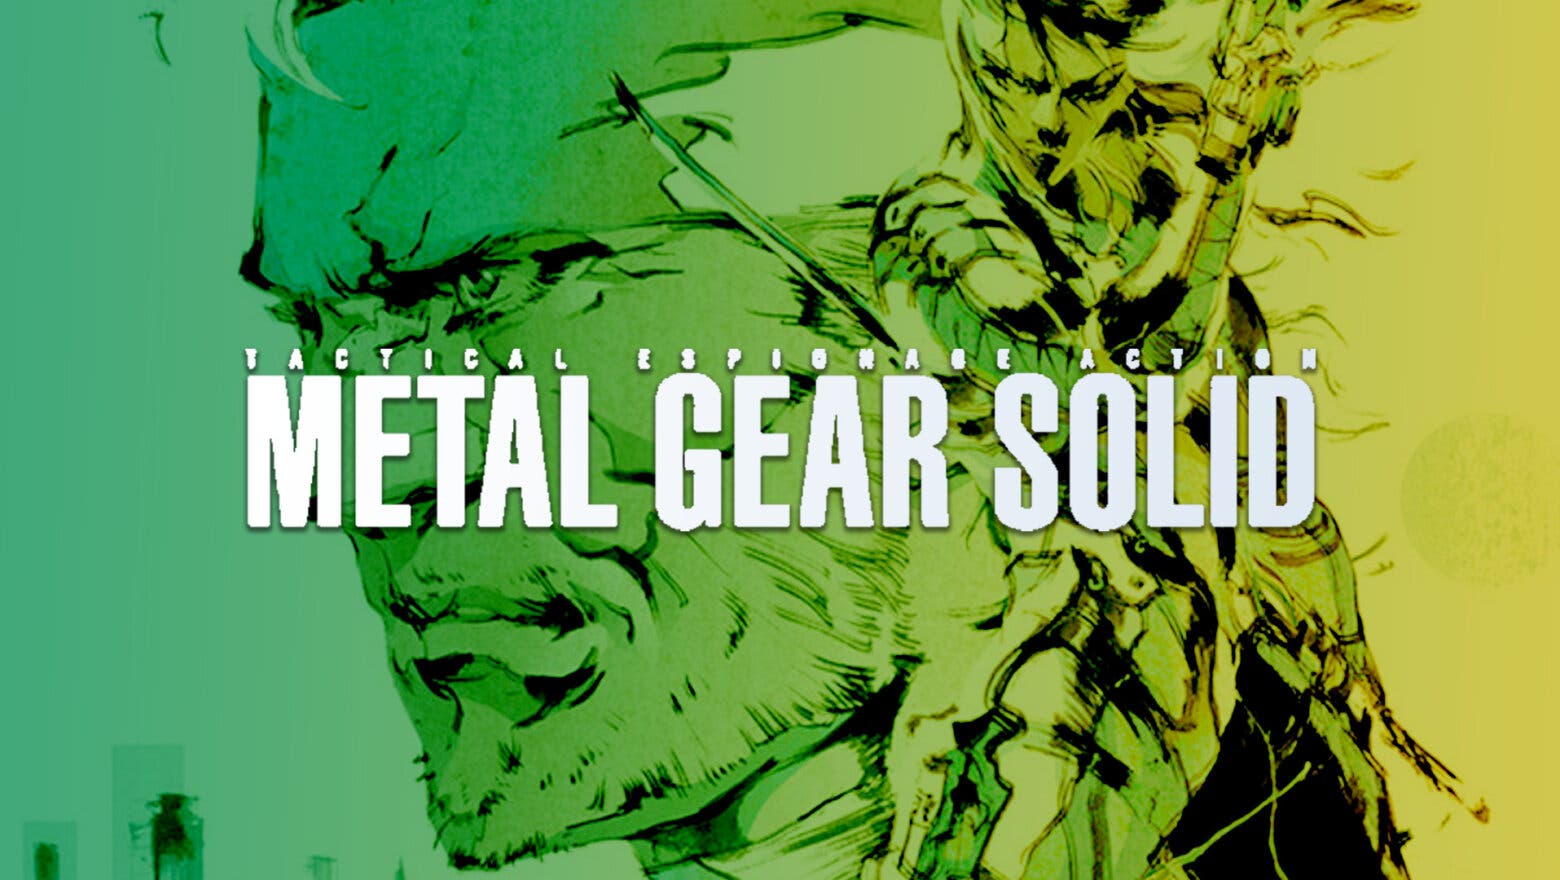 Imagen de El remake de Metal Gear Solid para PS5 es real y se anunciará pronto según fuentes propias